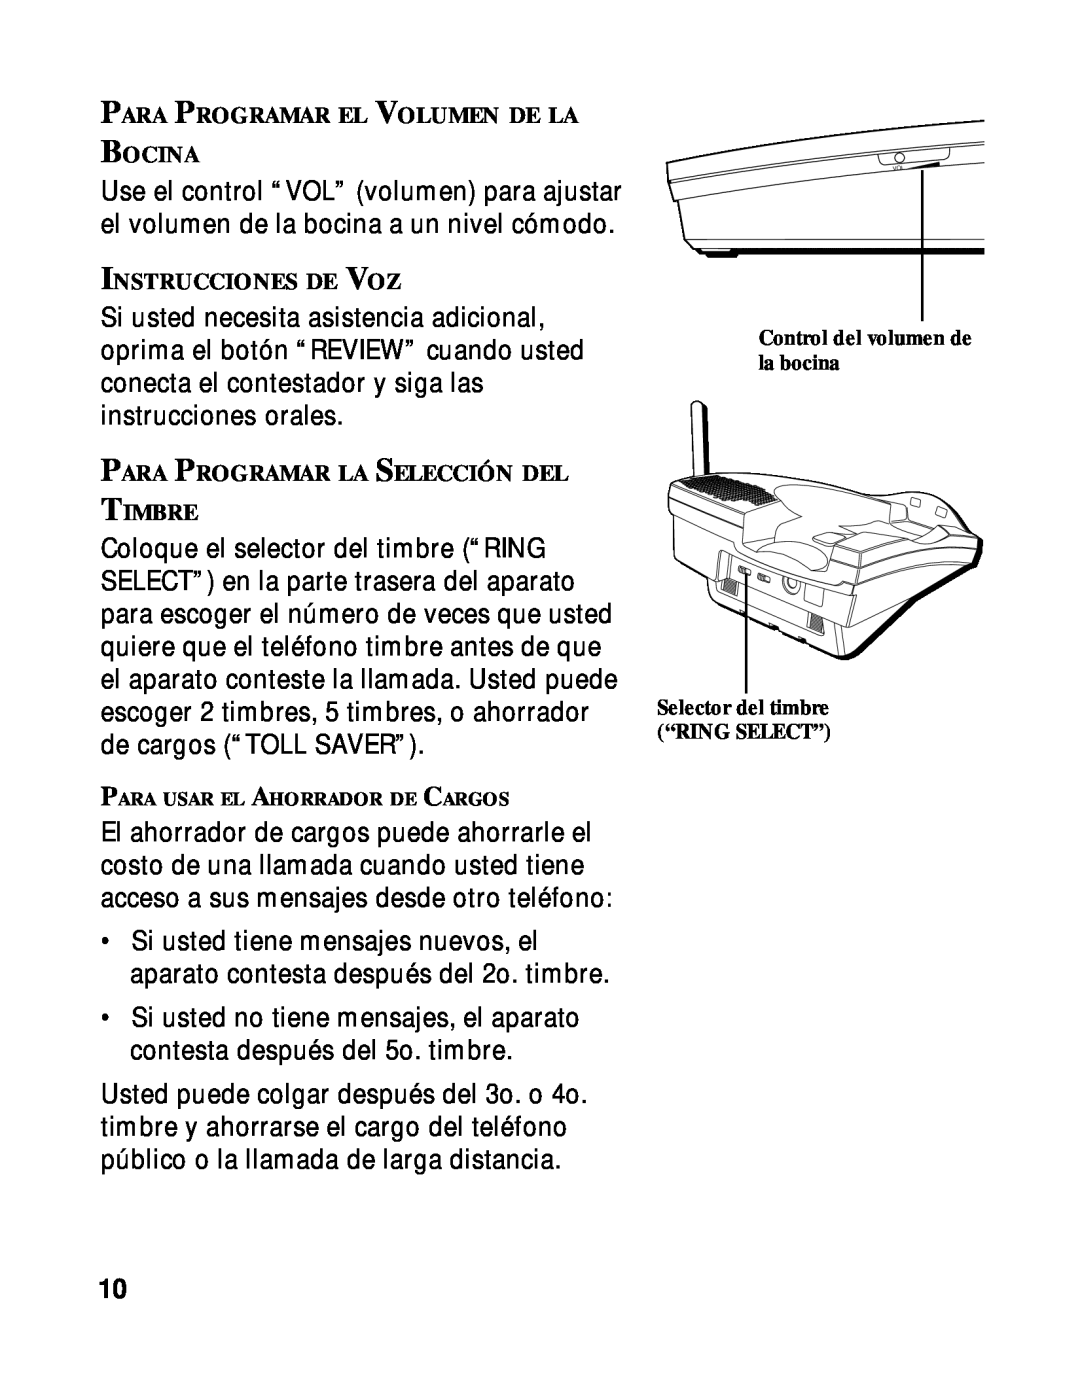 RCA 900 MHz manual Para Programar El Volumen De La Bocina, Instrucciones De Voz, Para Programar La Selección Del Timbre 